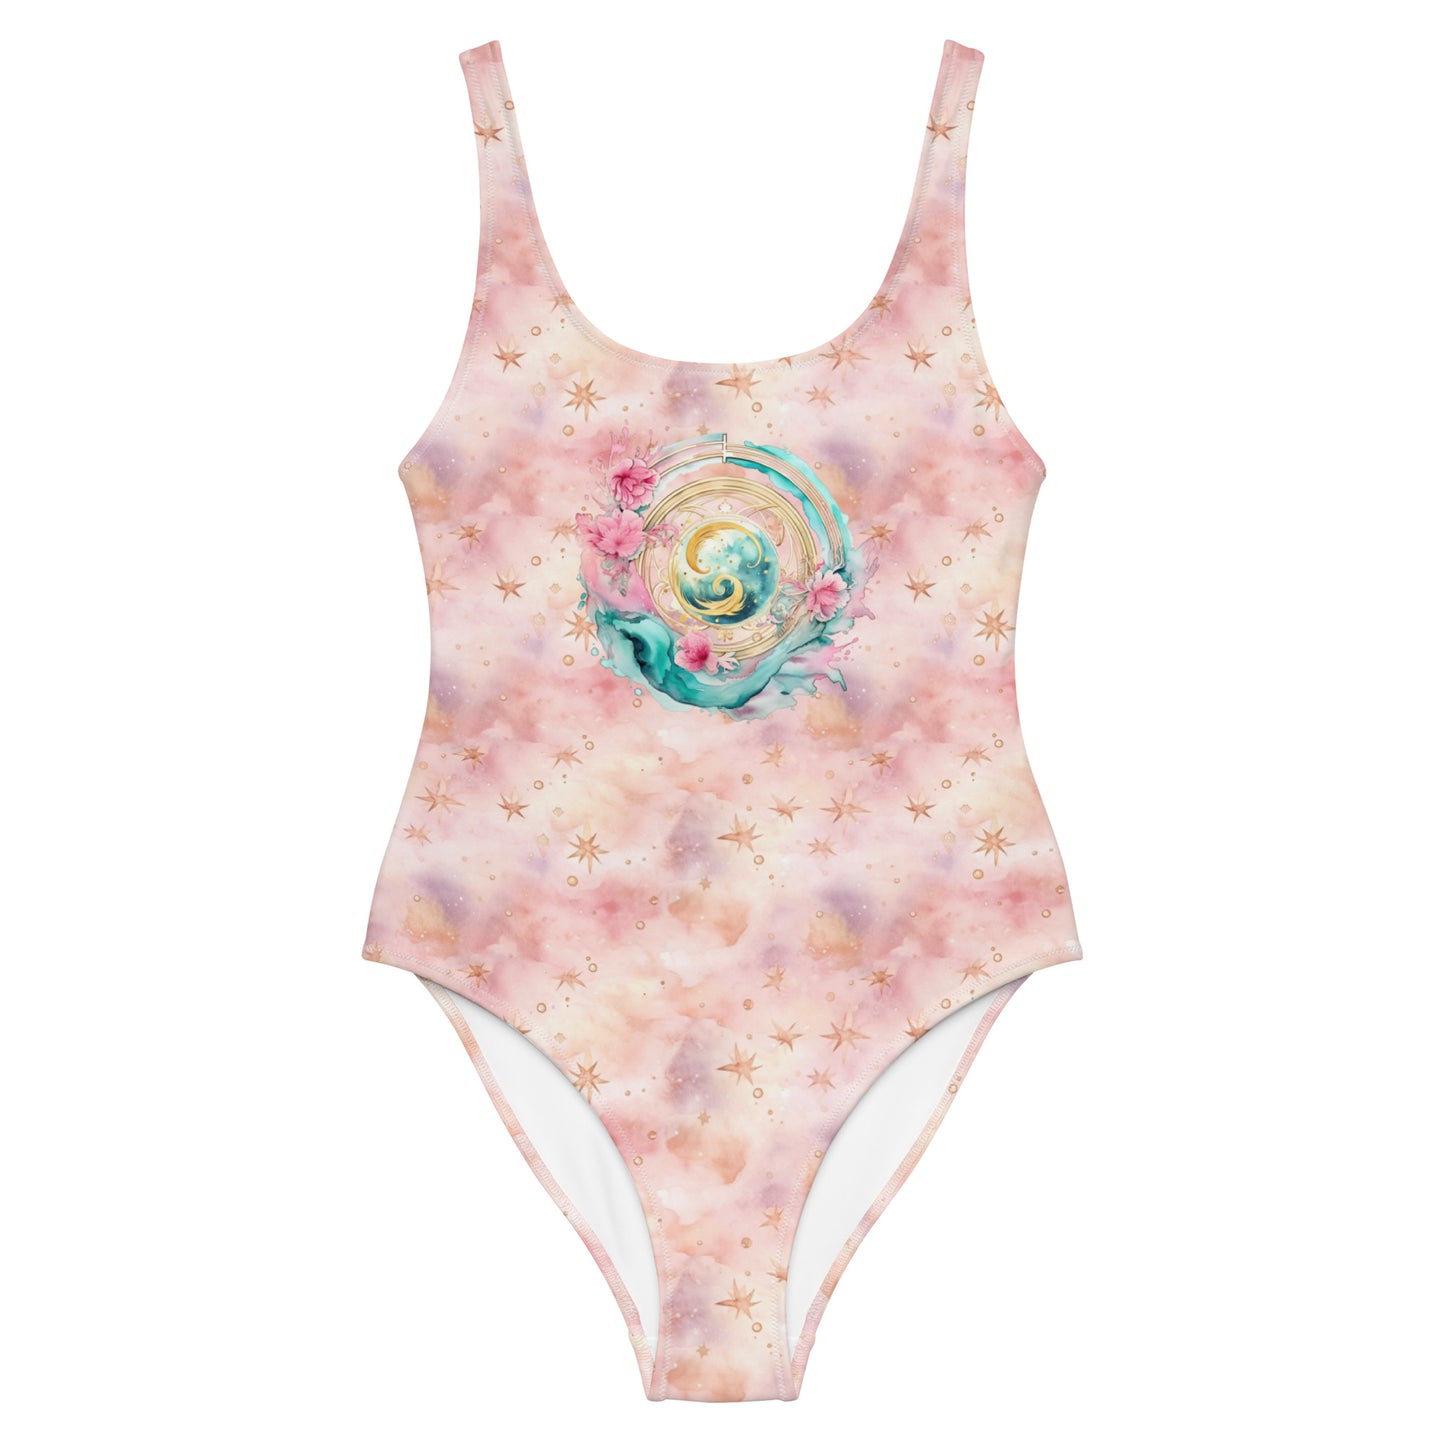 Aquarius One-Piece Swimsuit